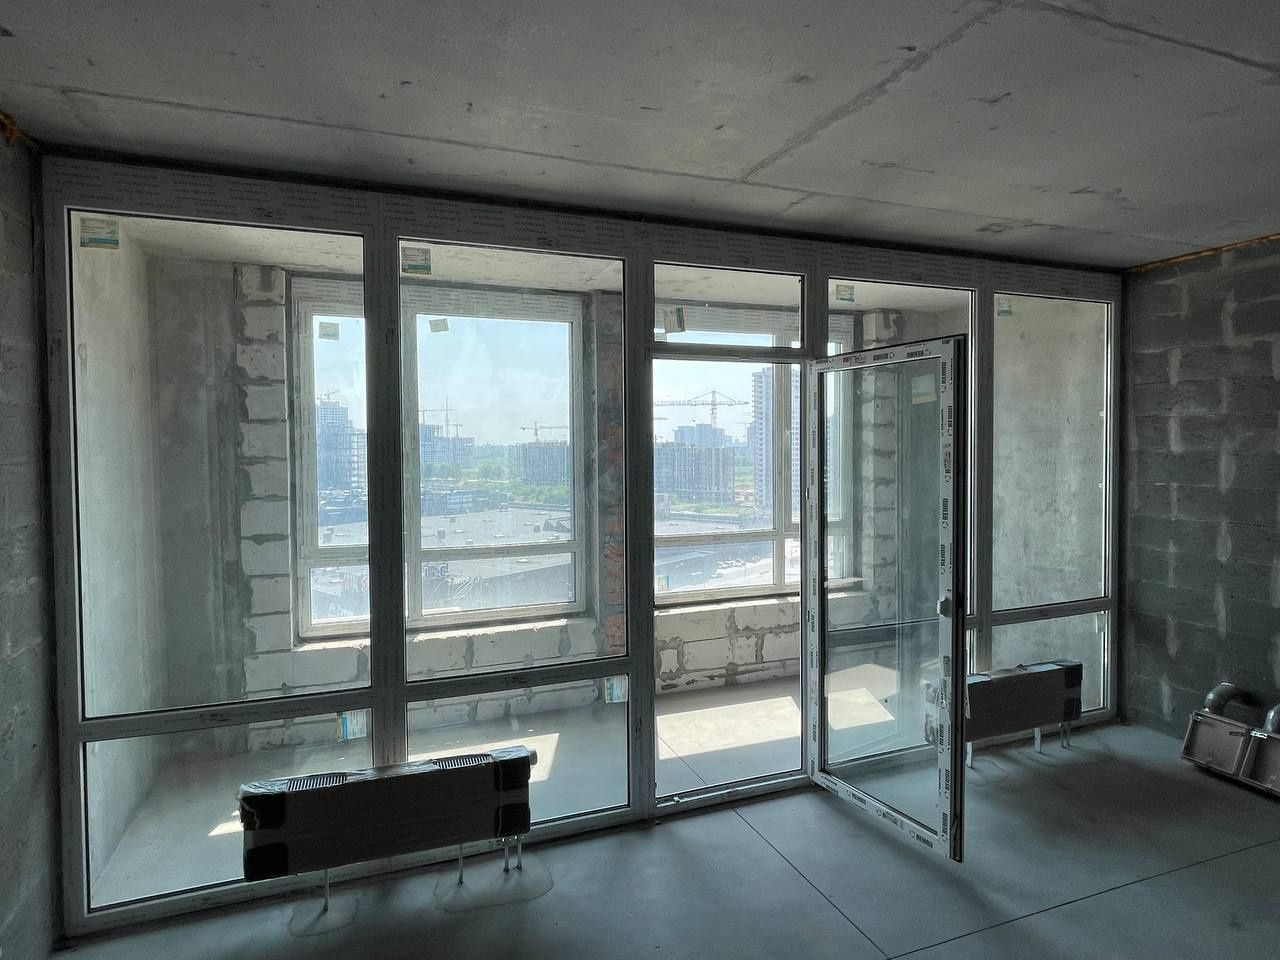 Окна панорамные шириной от 150 см. До 20 погонных метров